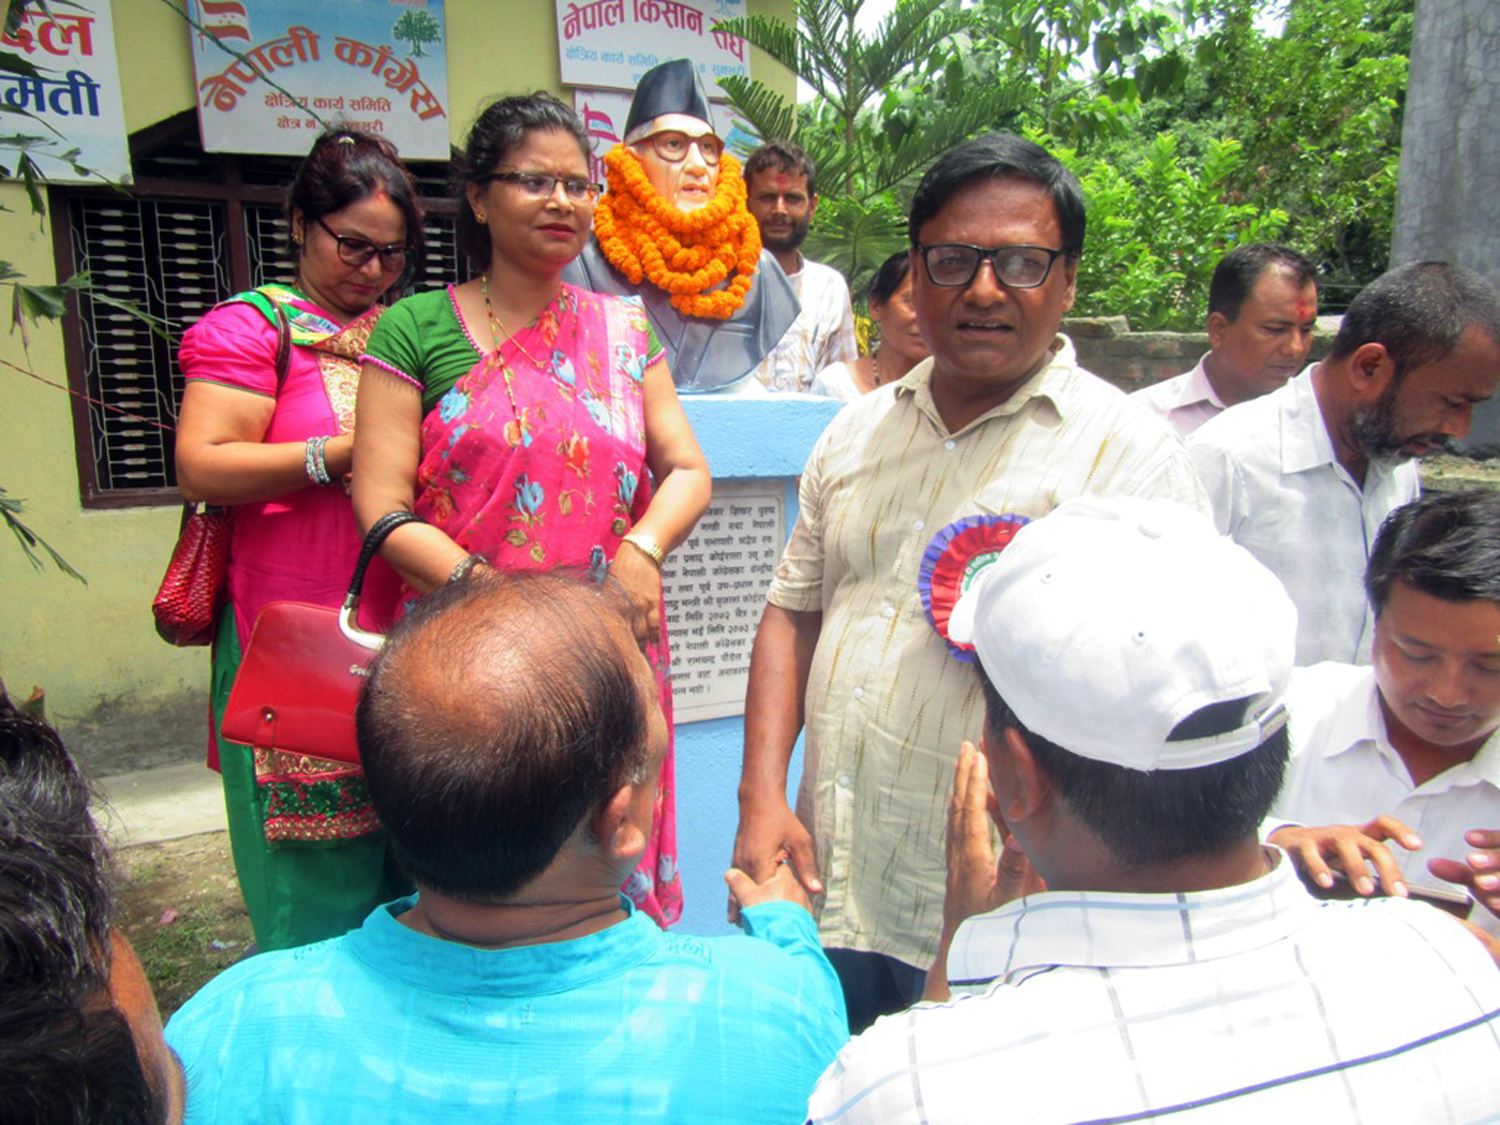 Bust of GP Koirala unveiled